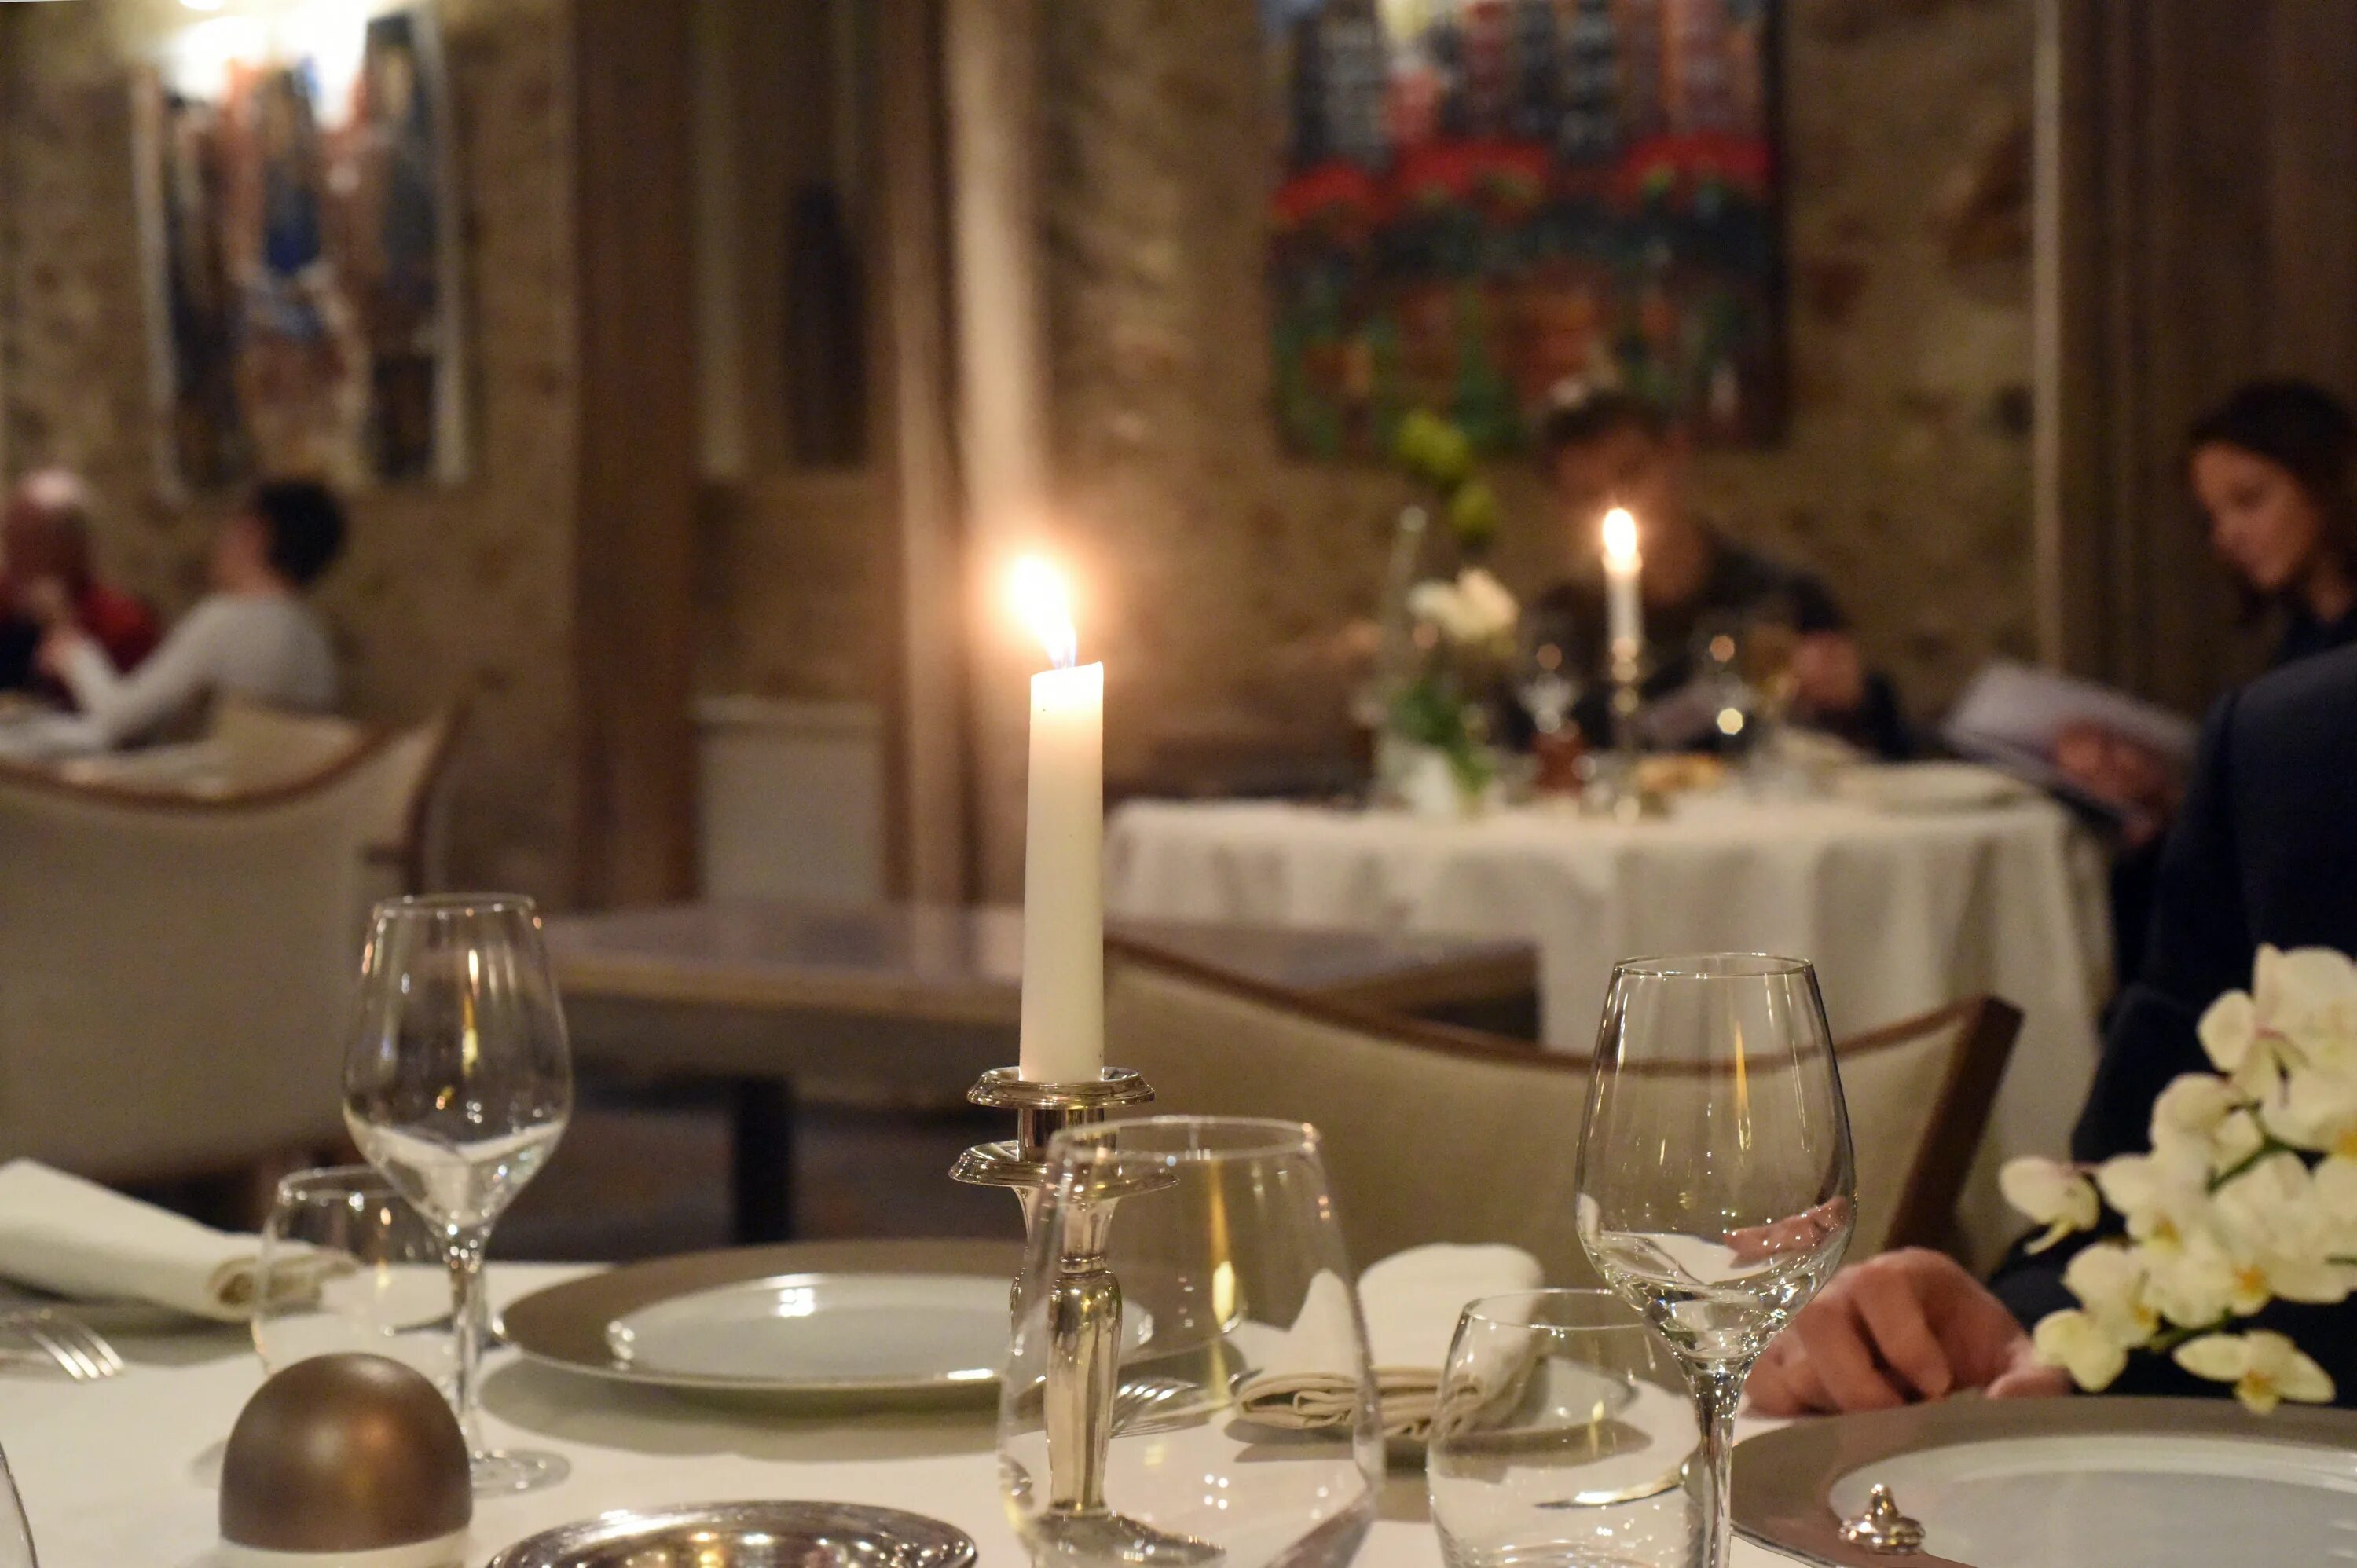 Ужин здесь. Столик в ресторане. Сервировка стола в ресторане. Романтический ужин в ресторане. Свечи в ресторане.